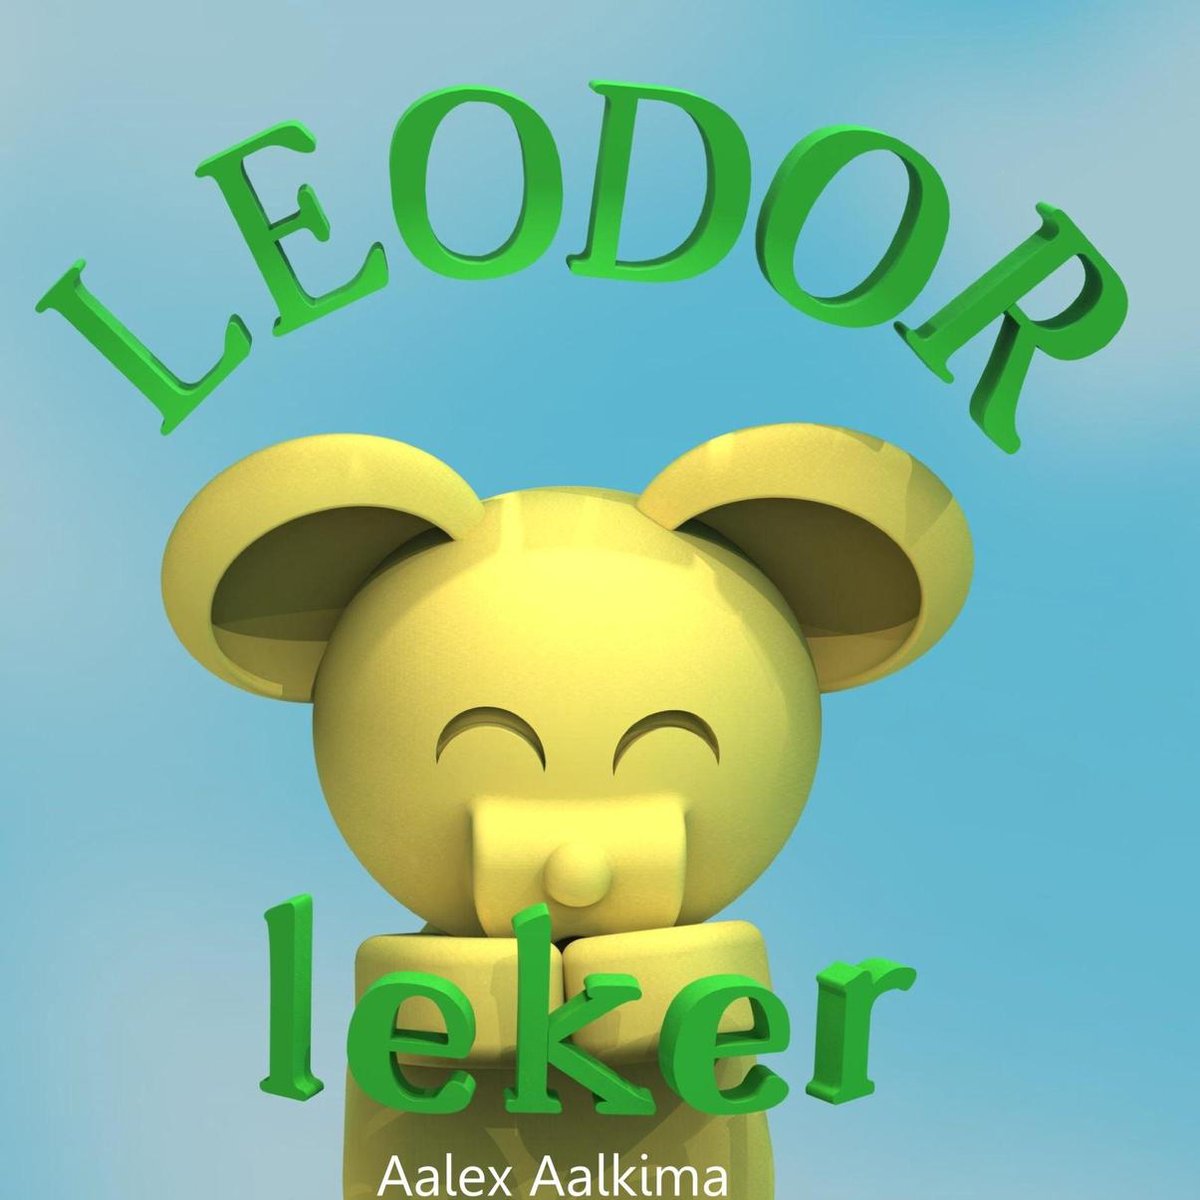 Leodor leker - Aalex Aalkima